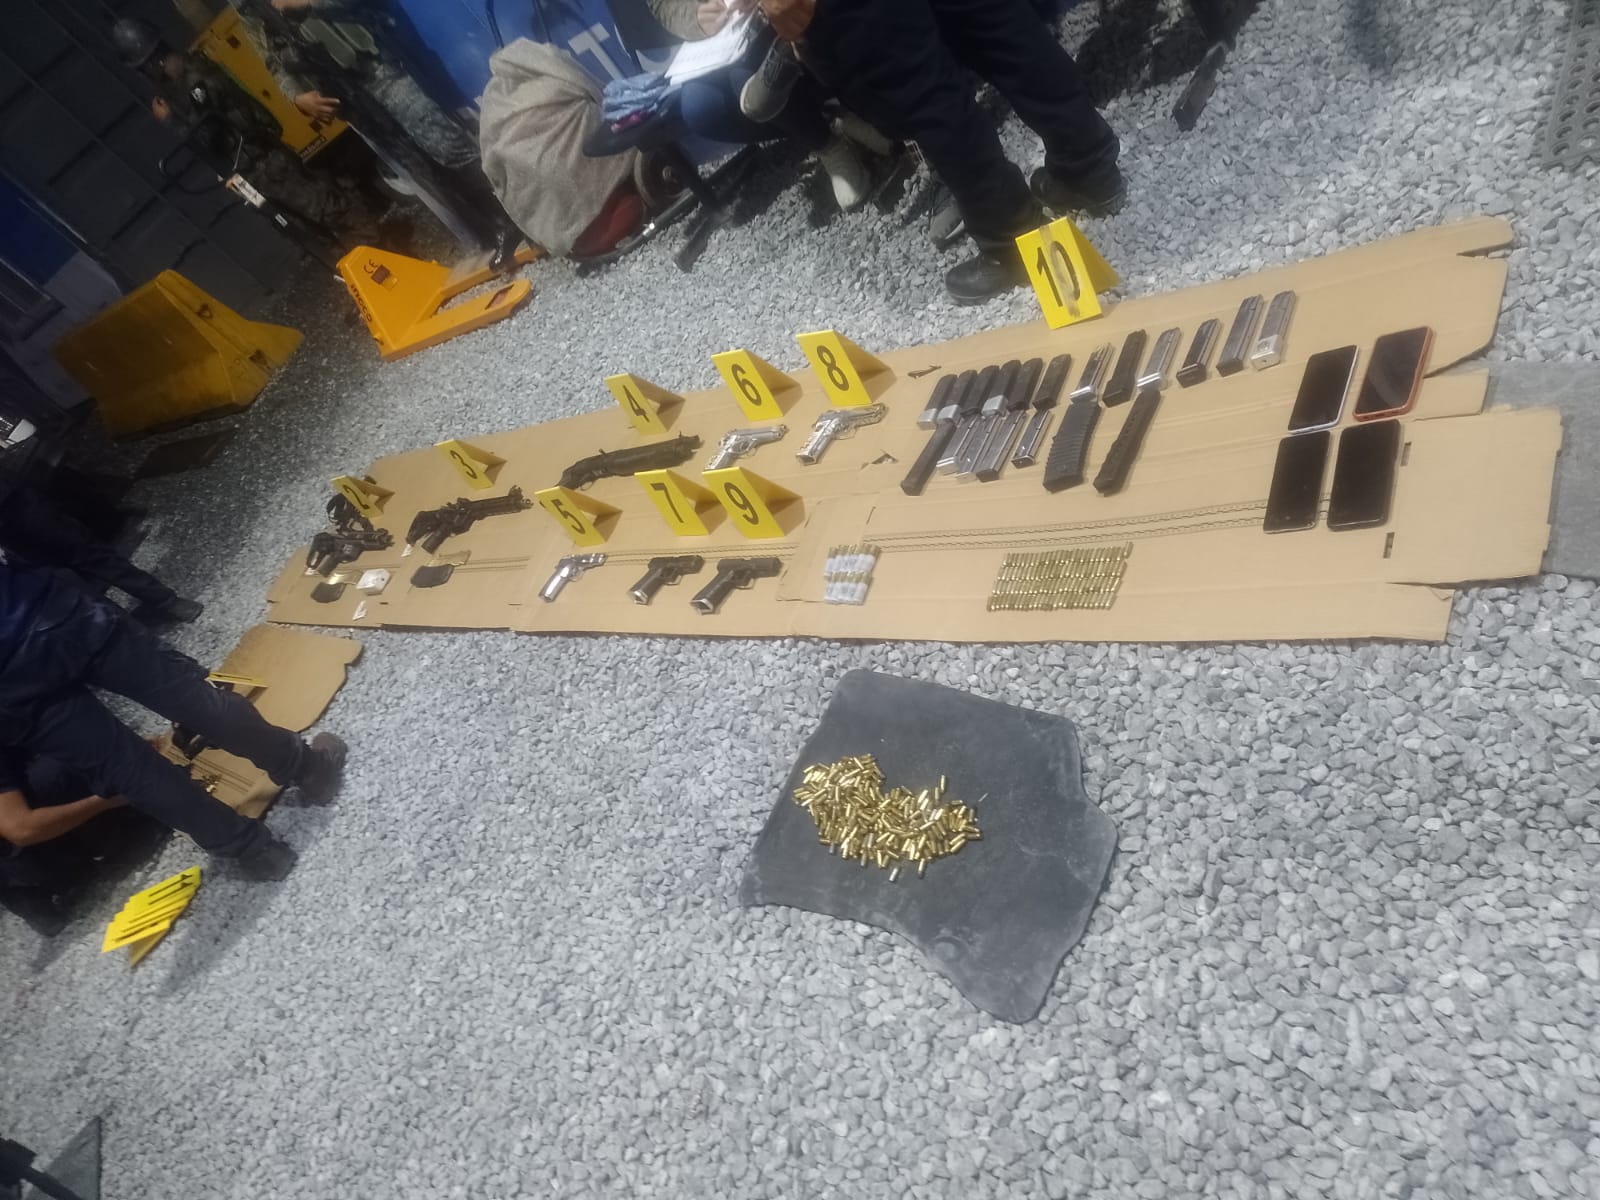 Este es el armamento que hallaron las fuerzas de seguridad en un picop cuyos tripulantes estuvieron involucrados en un enfrentamiento armado en Izabal el 25 de julio por la noche. (Foto Prensa Libre: Mingob).